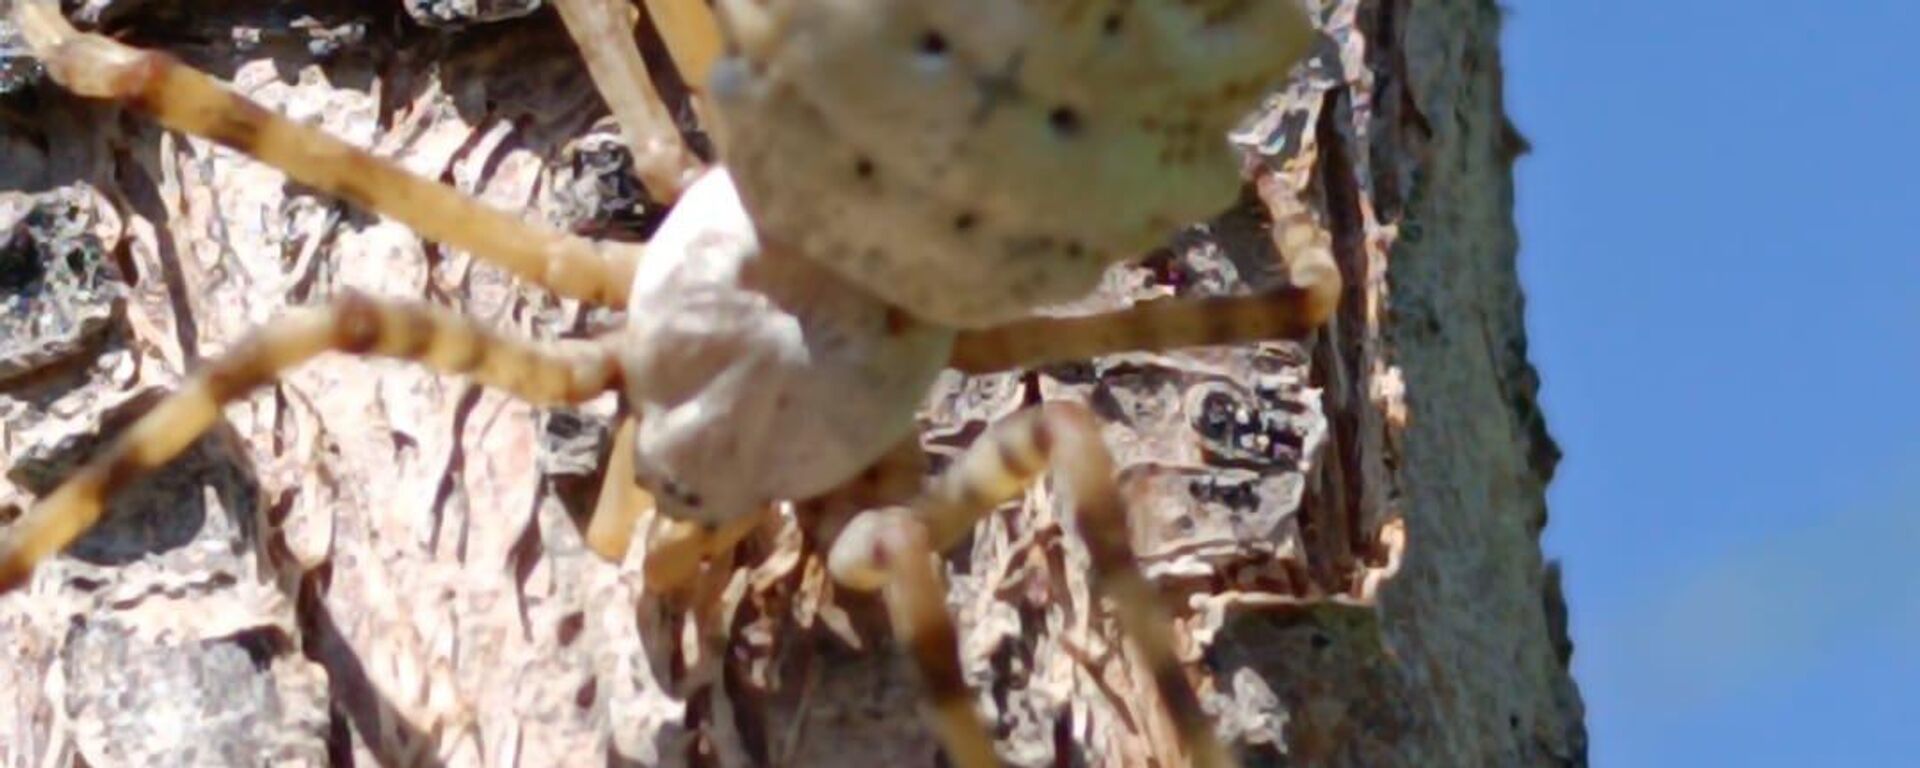 Malatya'nın Kale ilçesinde dünyanın en zehirli örümceklerinden biri olduğu belirtilen argiope lobata türüne rastlandı. - Sputnik Türkiye, 1920, 20.09.2023